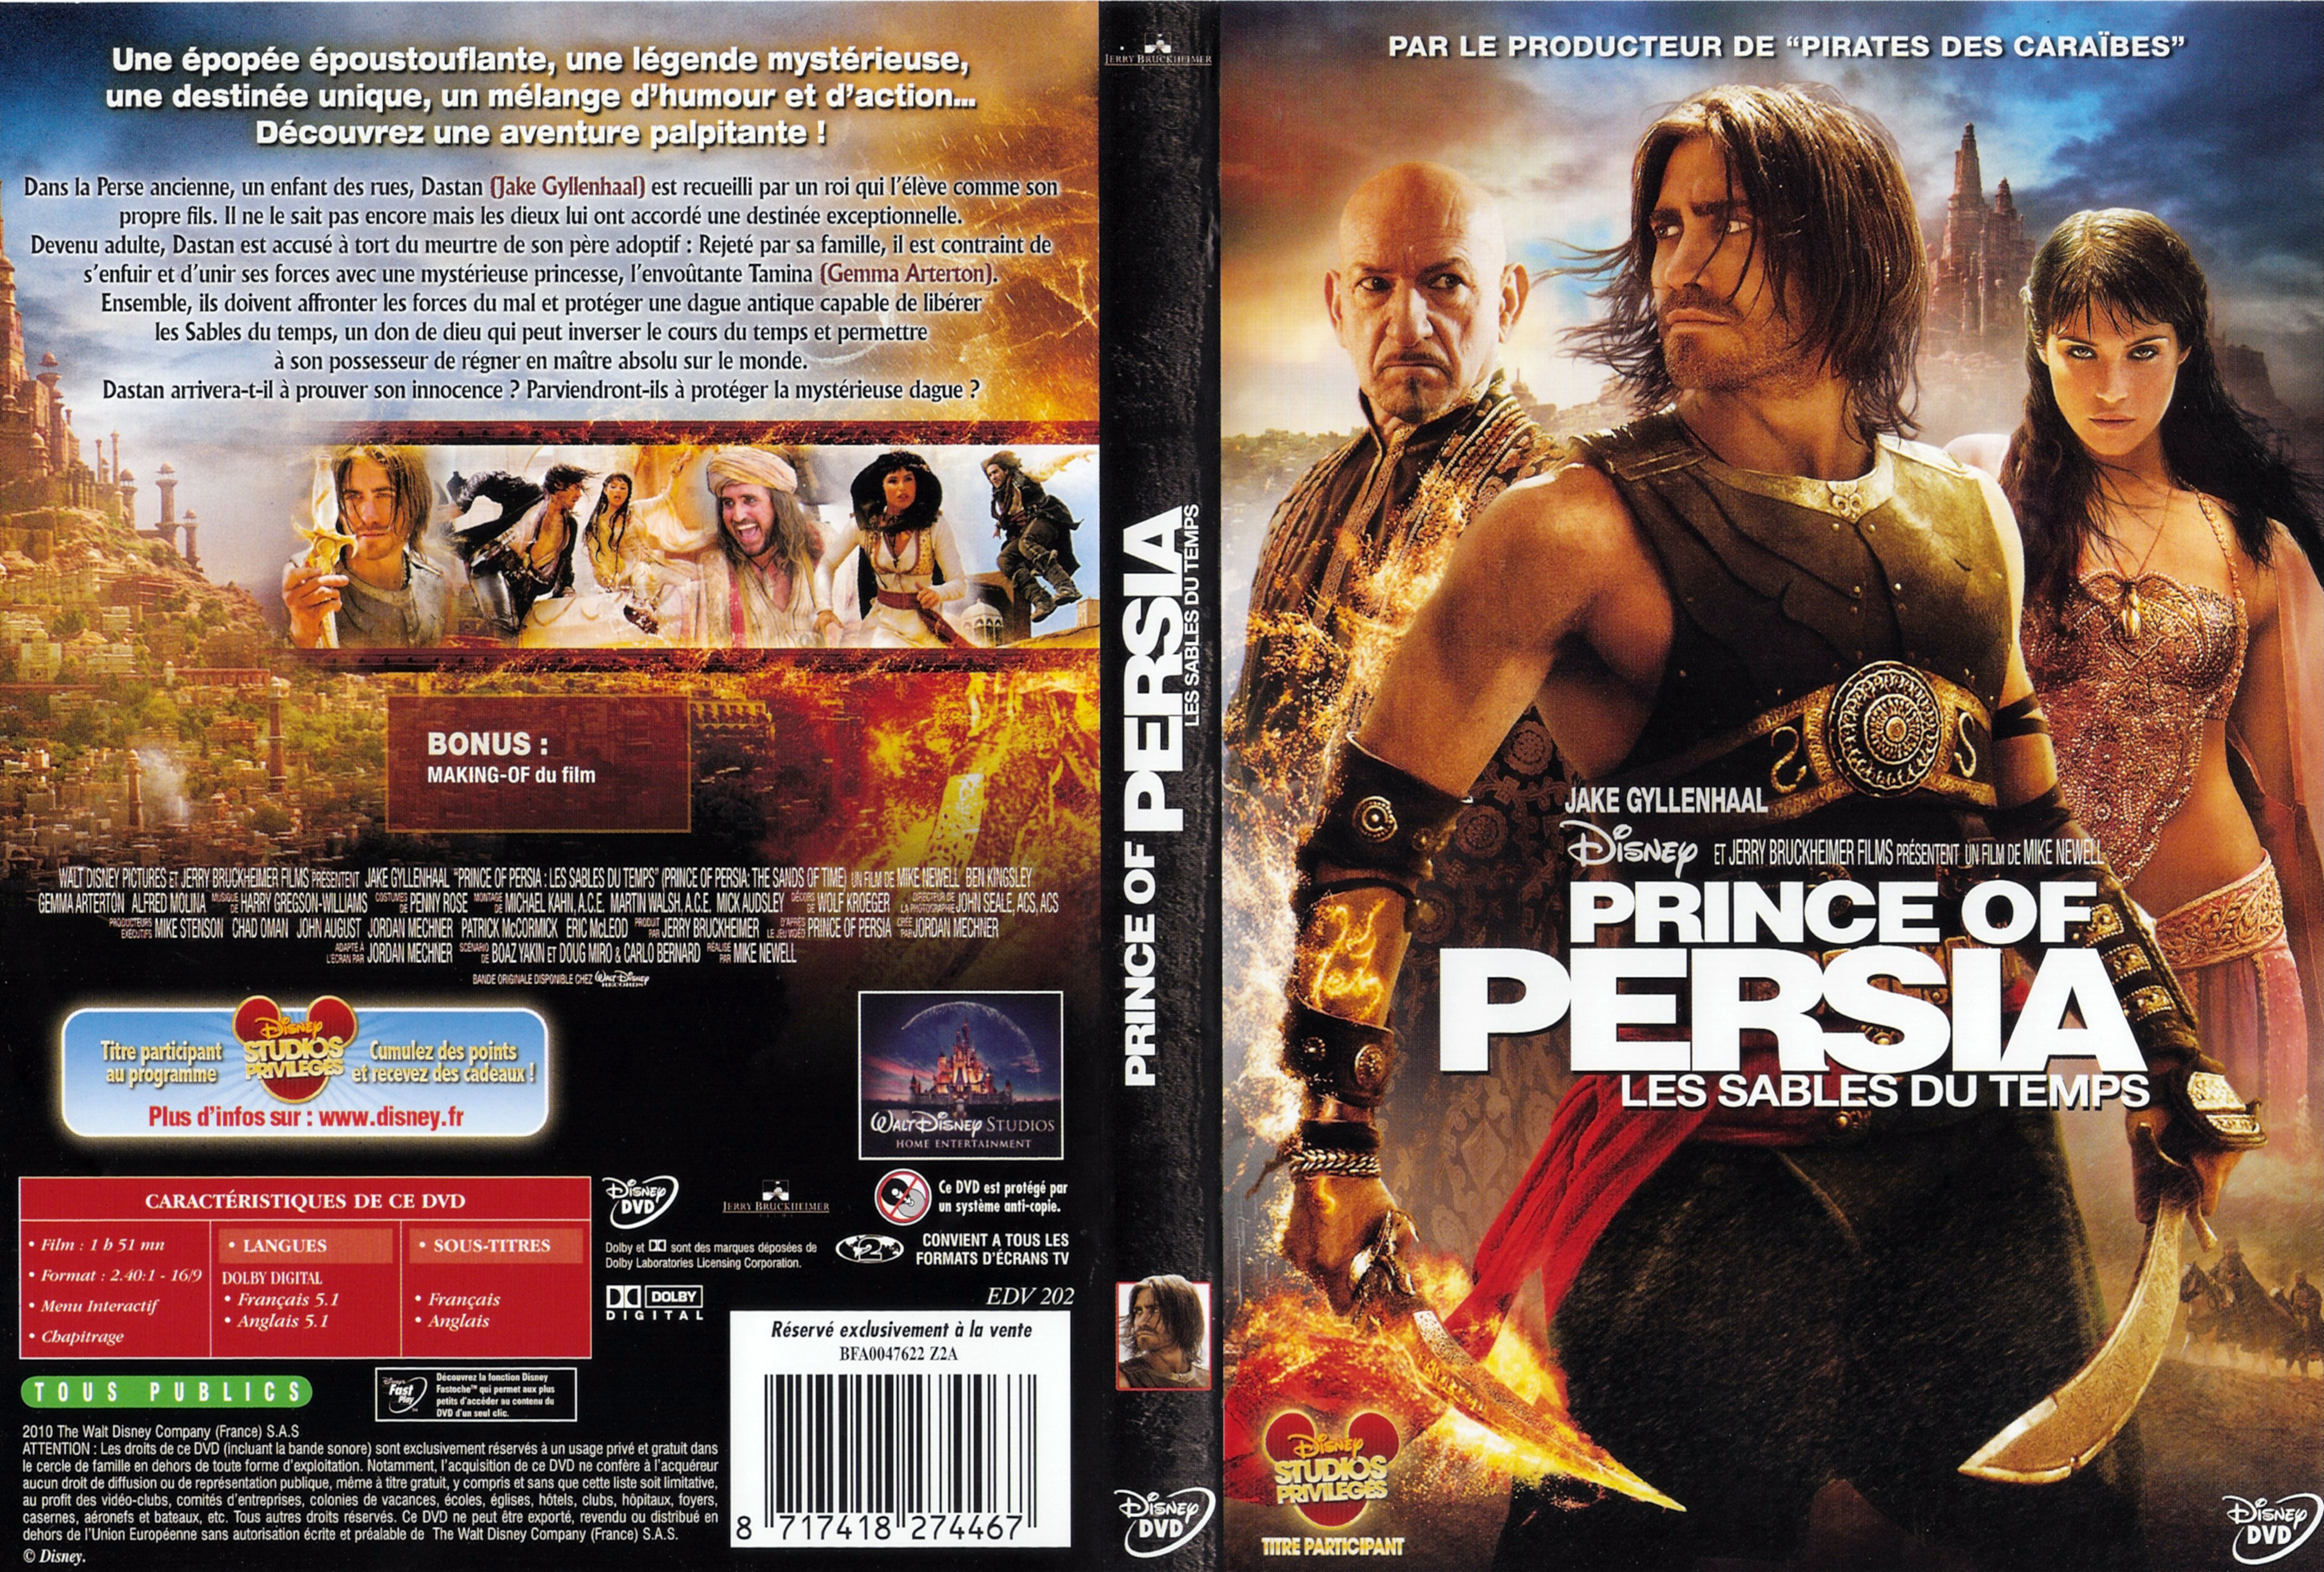 Jaquette DVD Prince of Persia - les sables du temps v2